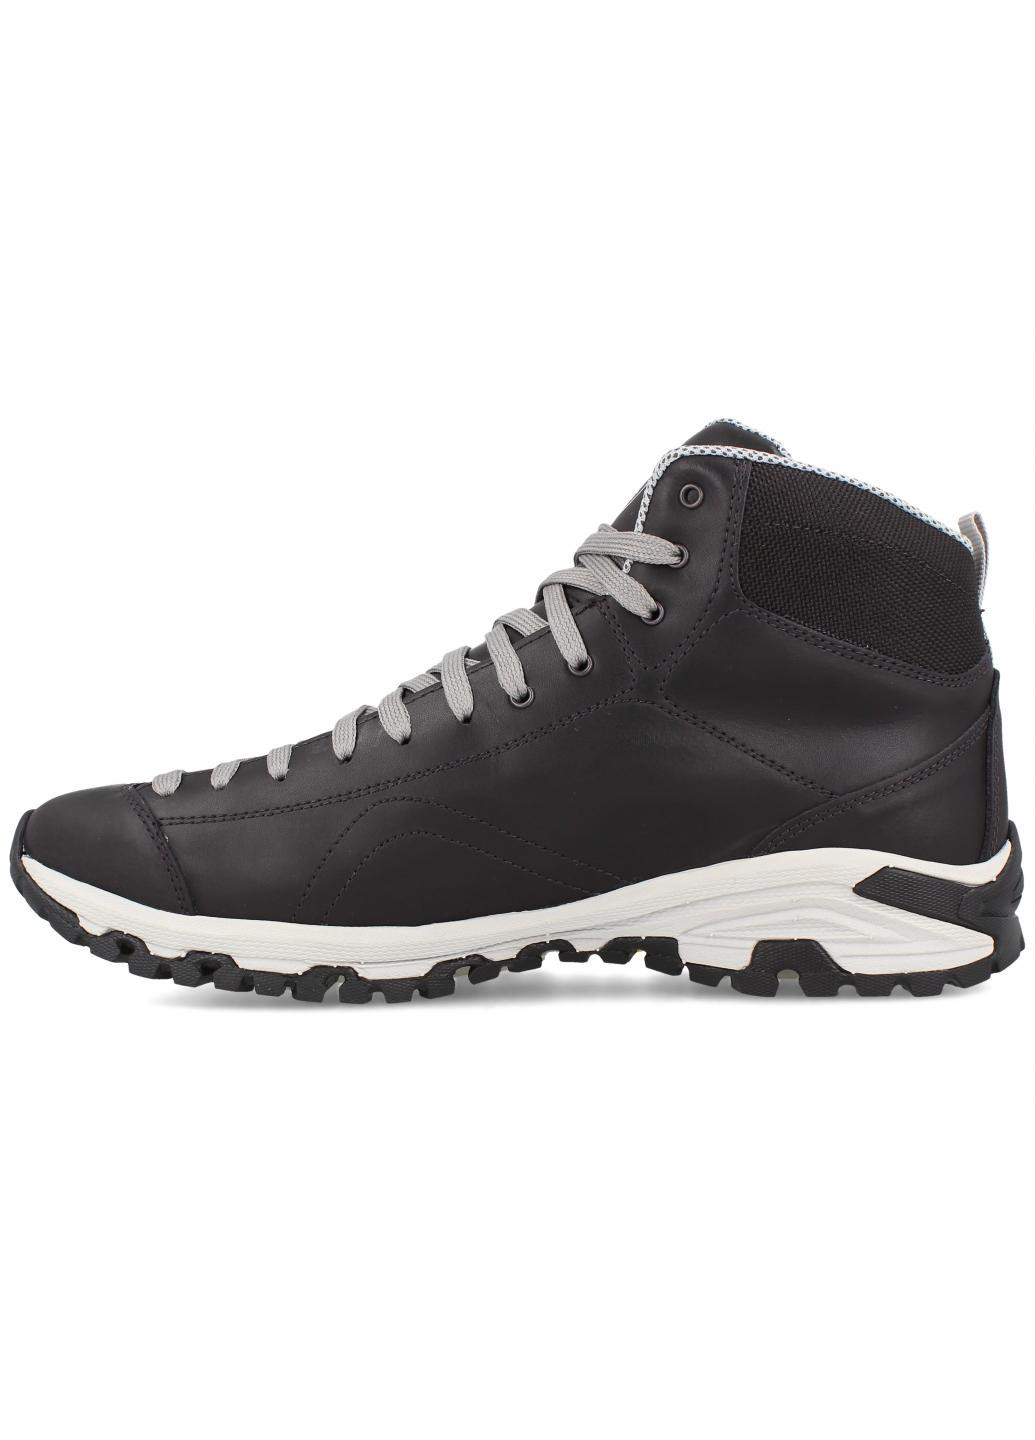 Черные зимние мужские ботинки black vibram 247951-27 made in italy Forester